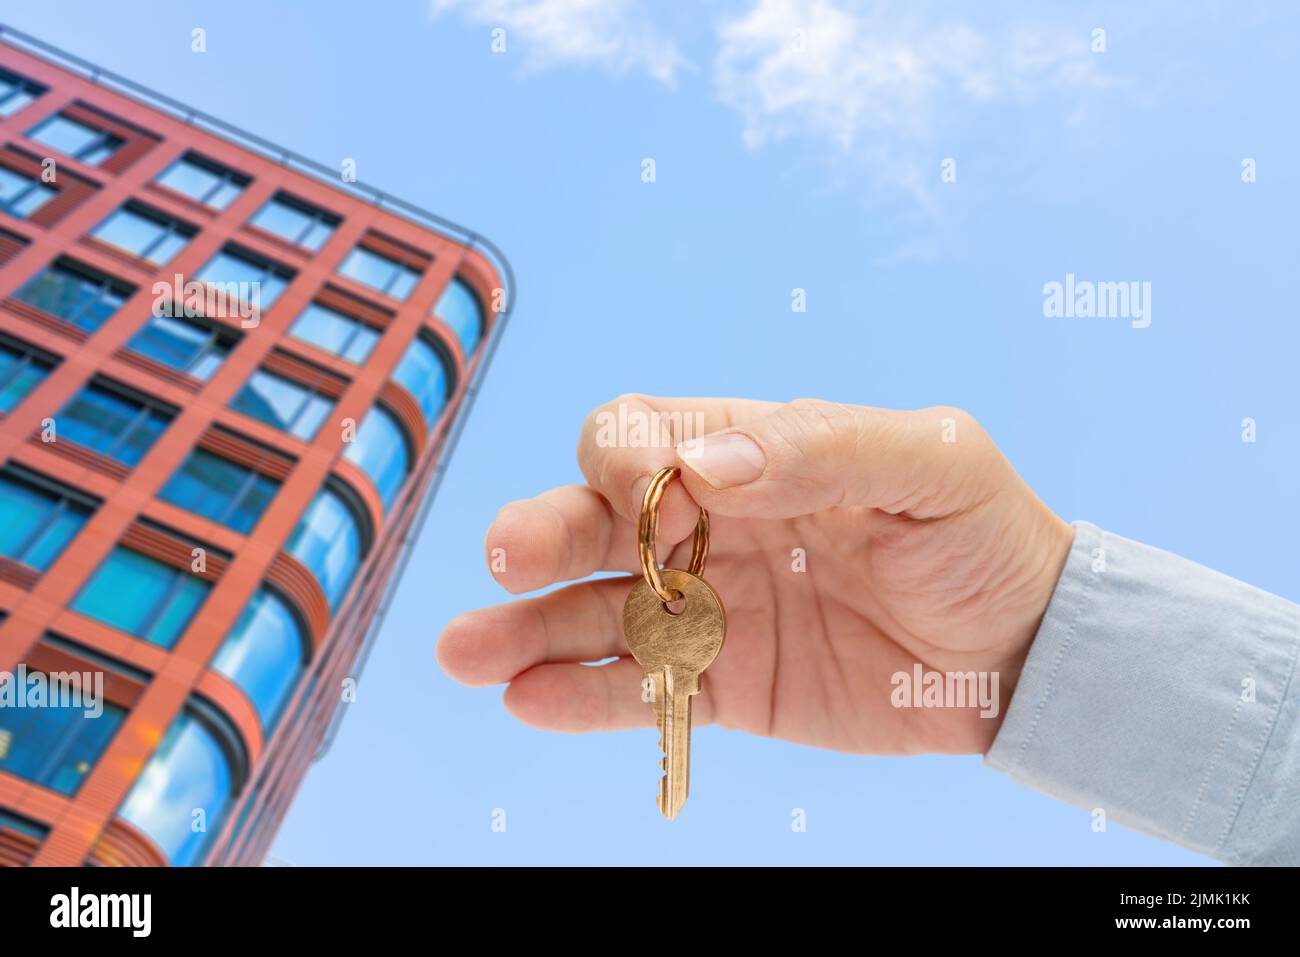 La chiave dell'appartamento in una mano dell'uomo. Chiave per serratura in ottone. Edificio moderno con vista dal basso. Architettura nella città moderna. Vendita di un Foto Stock